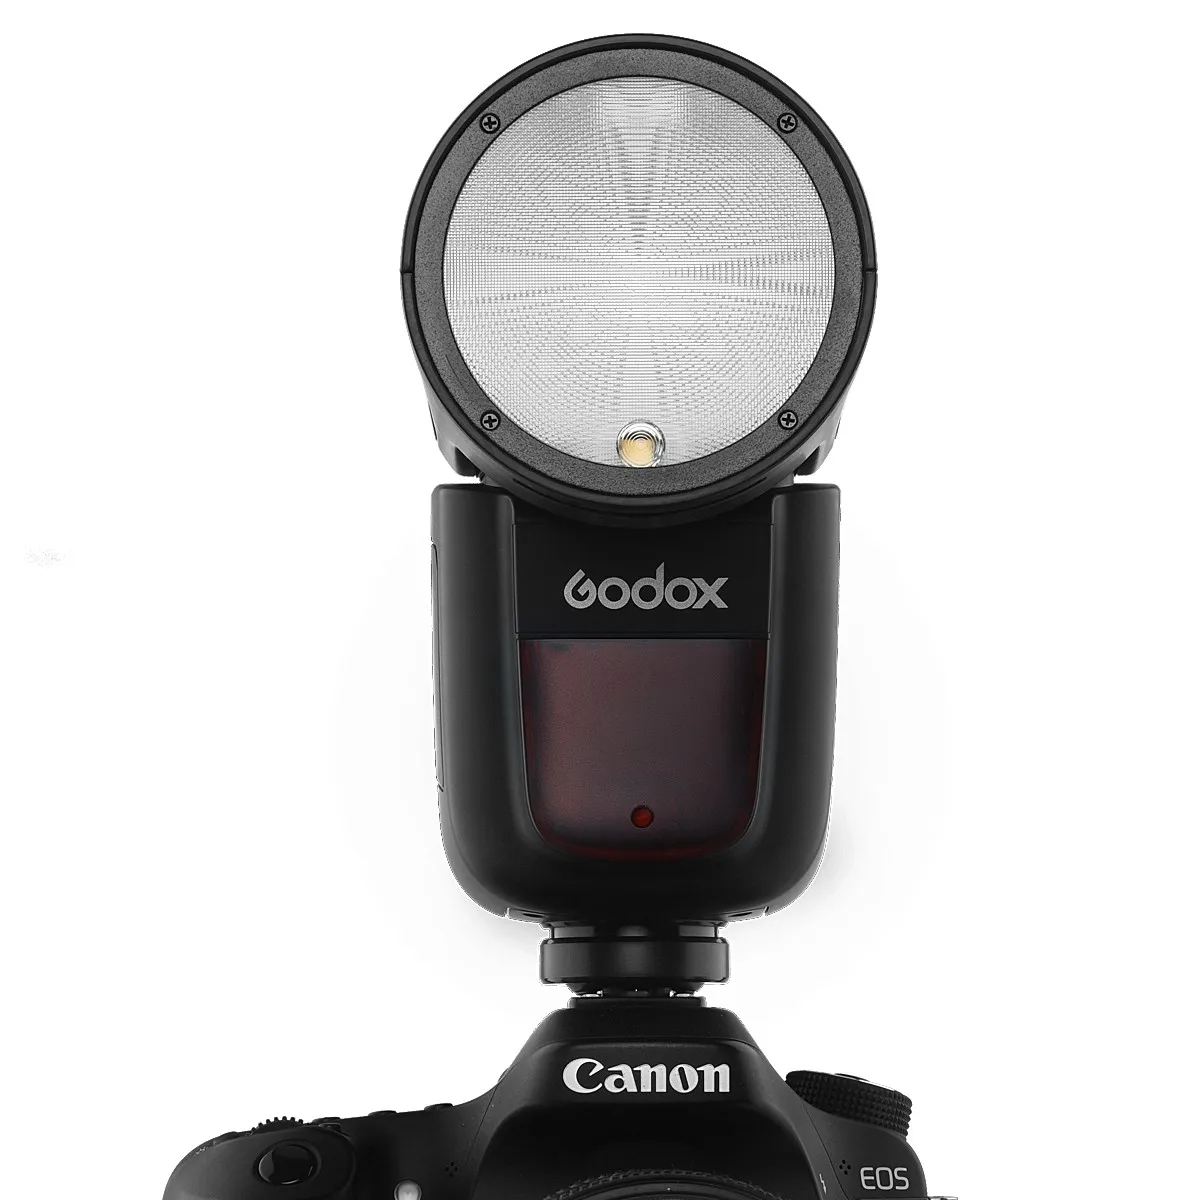 Godox вспышка для камеры V1 для sony A9 A7M3 A7RIII A6000 A6300 A5100 a7RII a7 для Canon/Nikon/Olympus/Fujifilm camera s